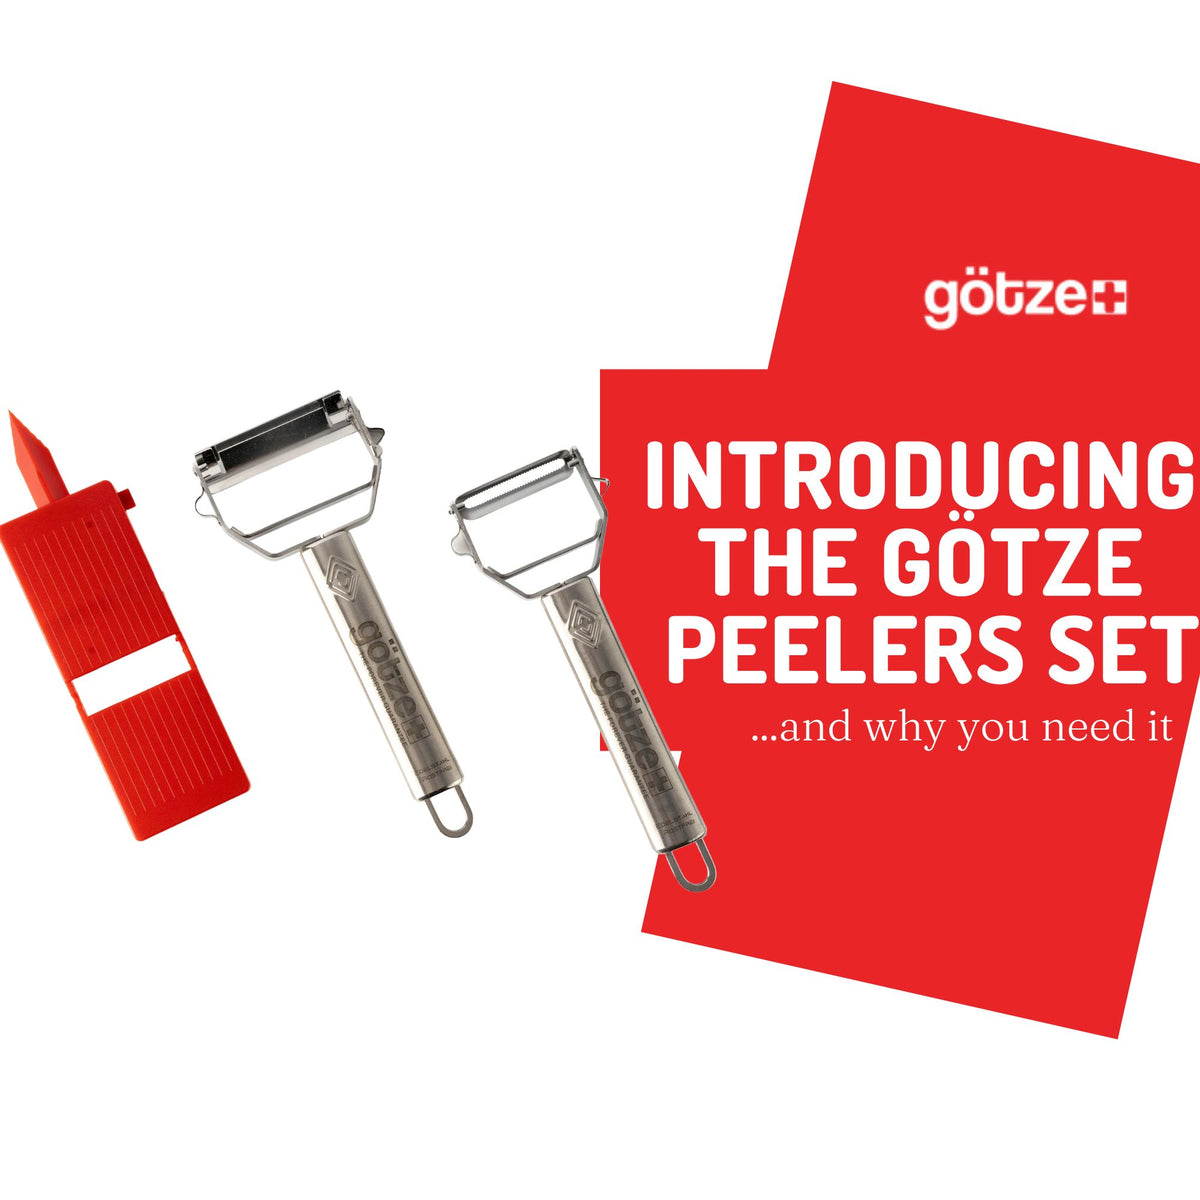 The Götze Peelers set